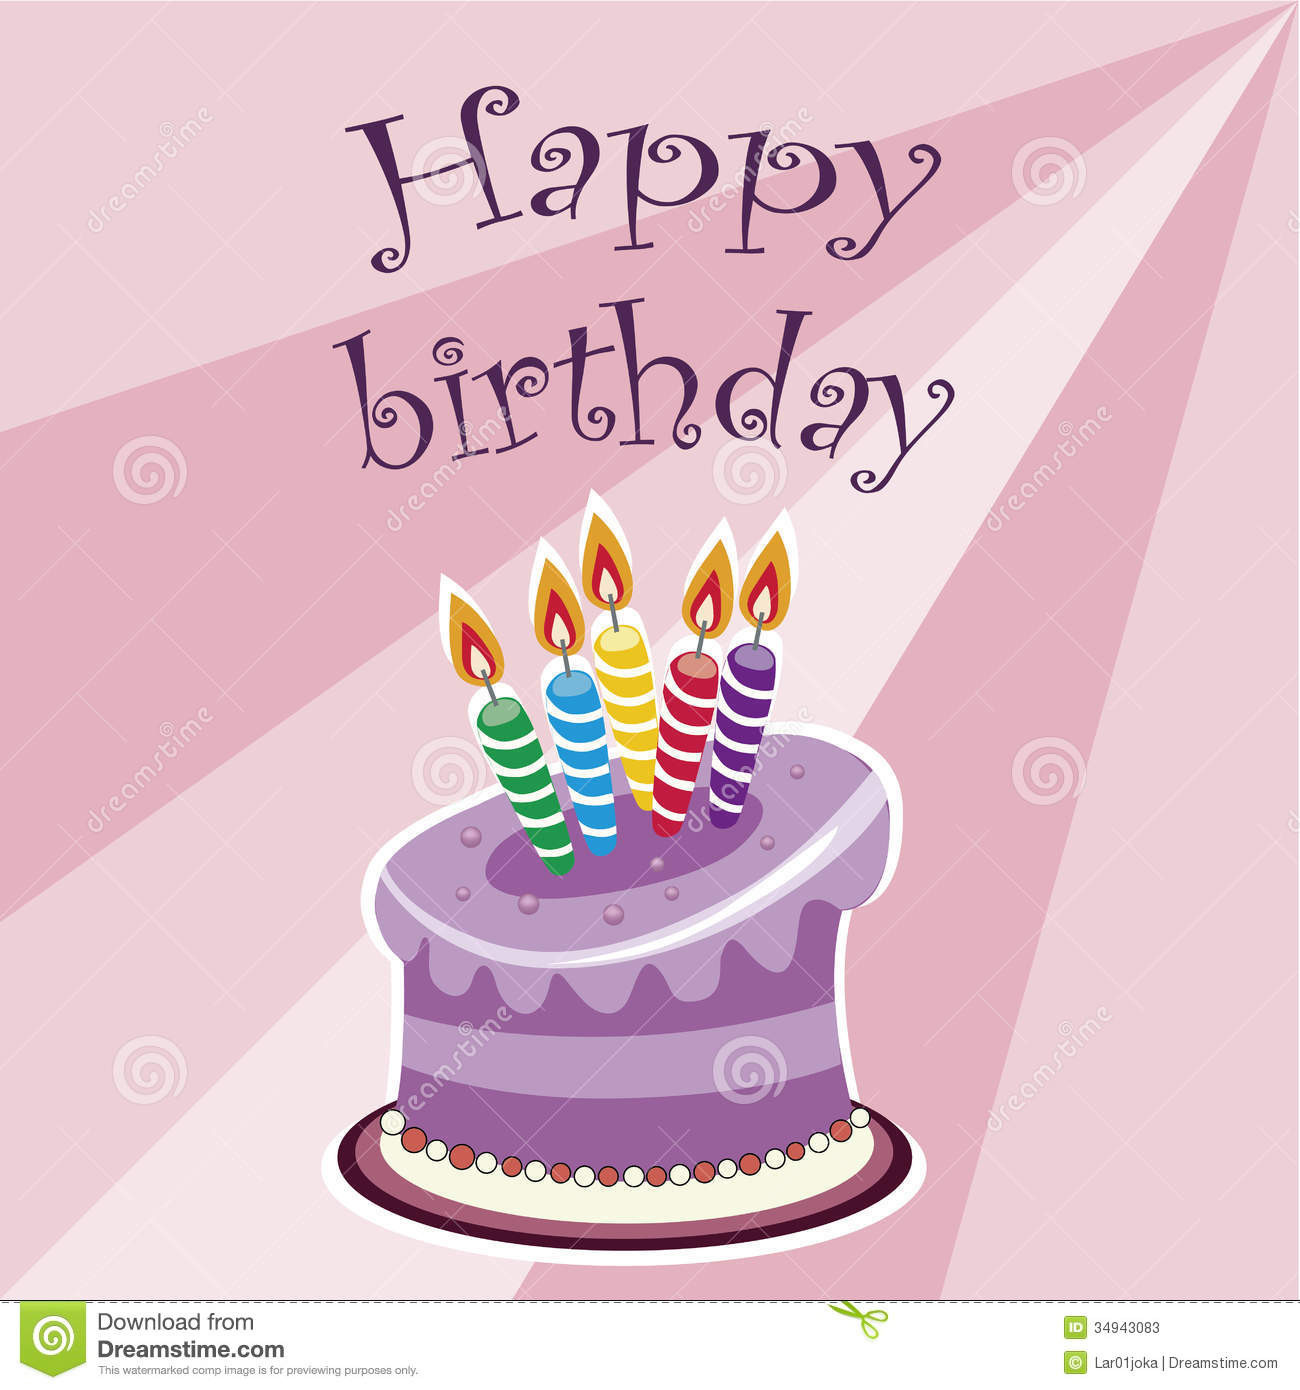 Happy Birthday Cake Text
 Happy Birthday With Cake Stock s Image